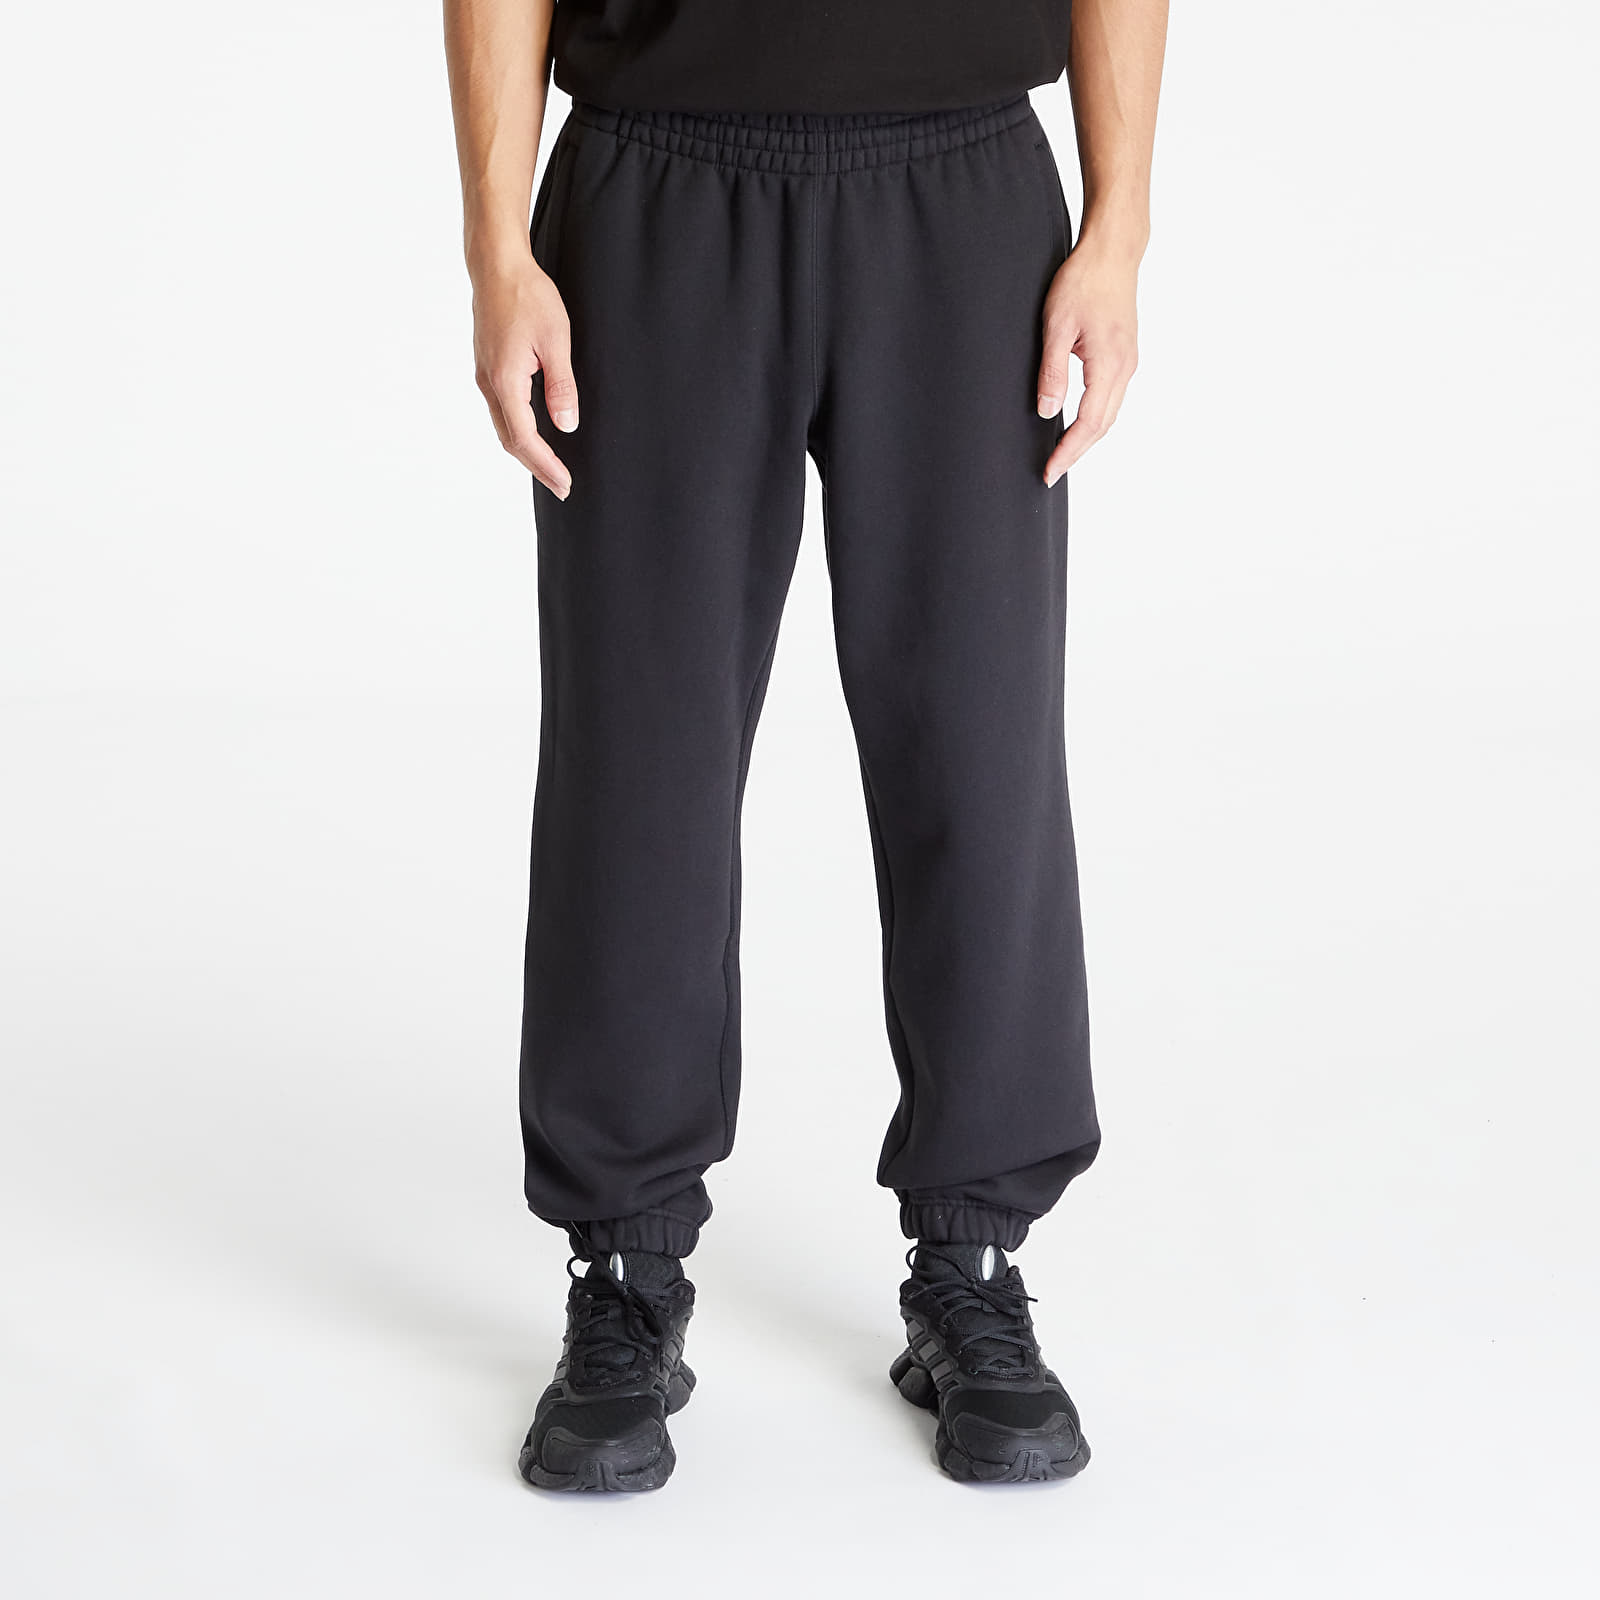 adidas Originals Premium Essentials Sweat Pants Black